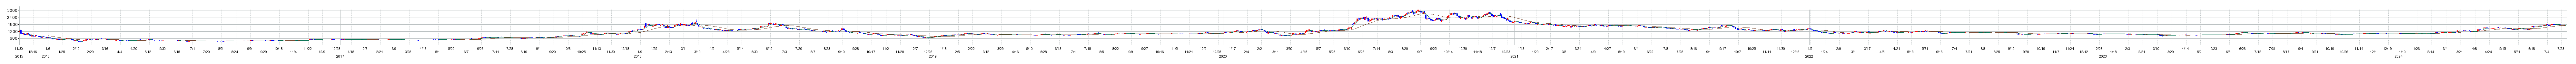 ネオジャパンの株価チャート